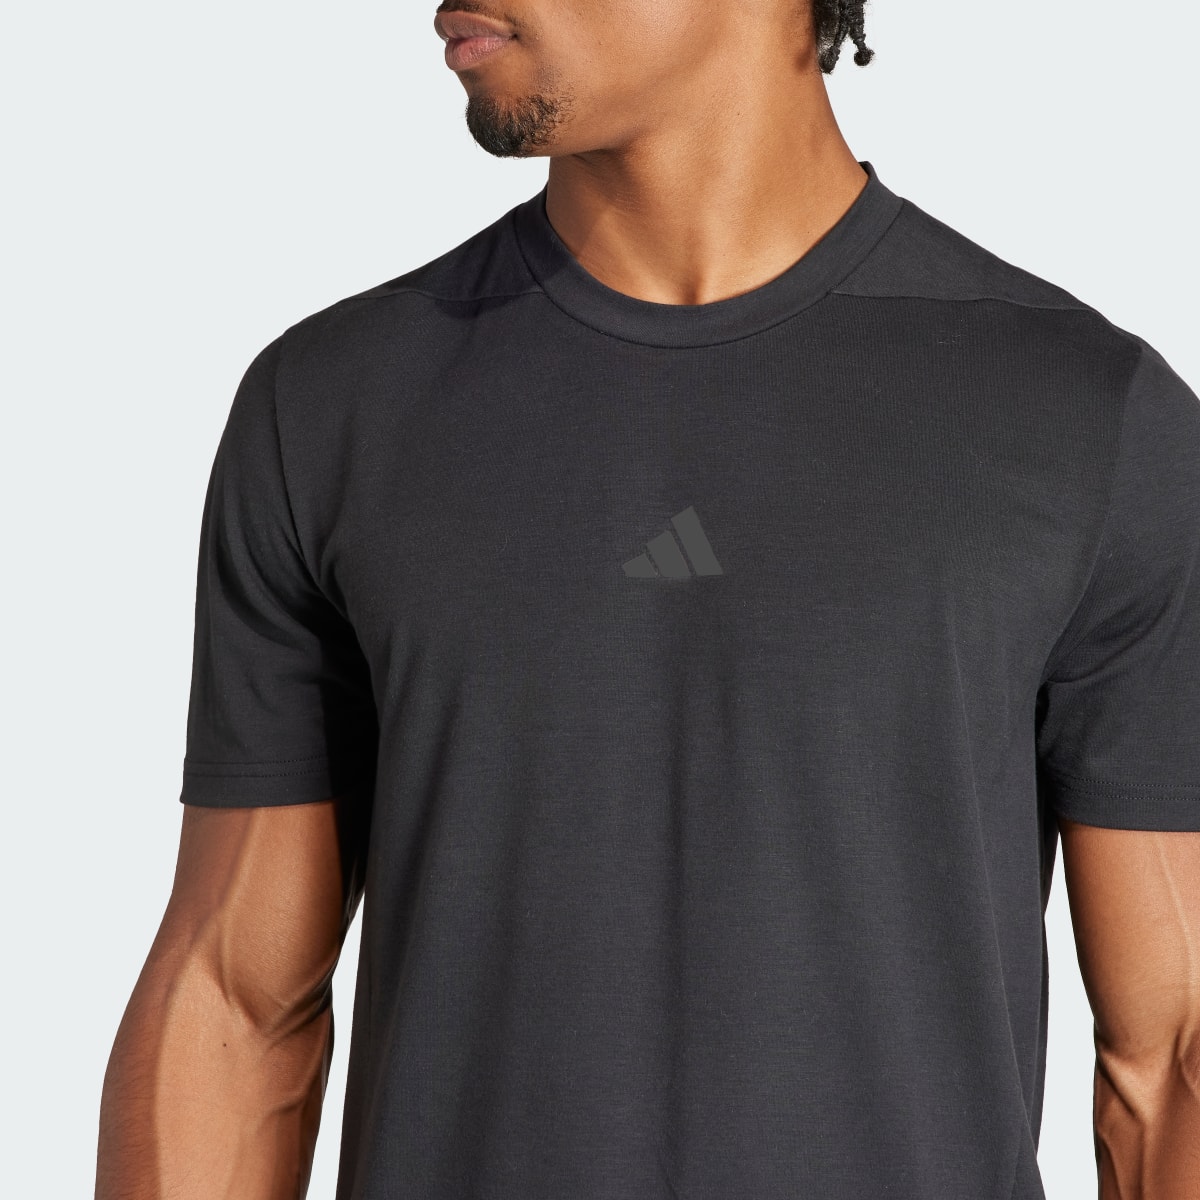 Adidas Camiseta Designed for Training Workout. 6